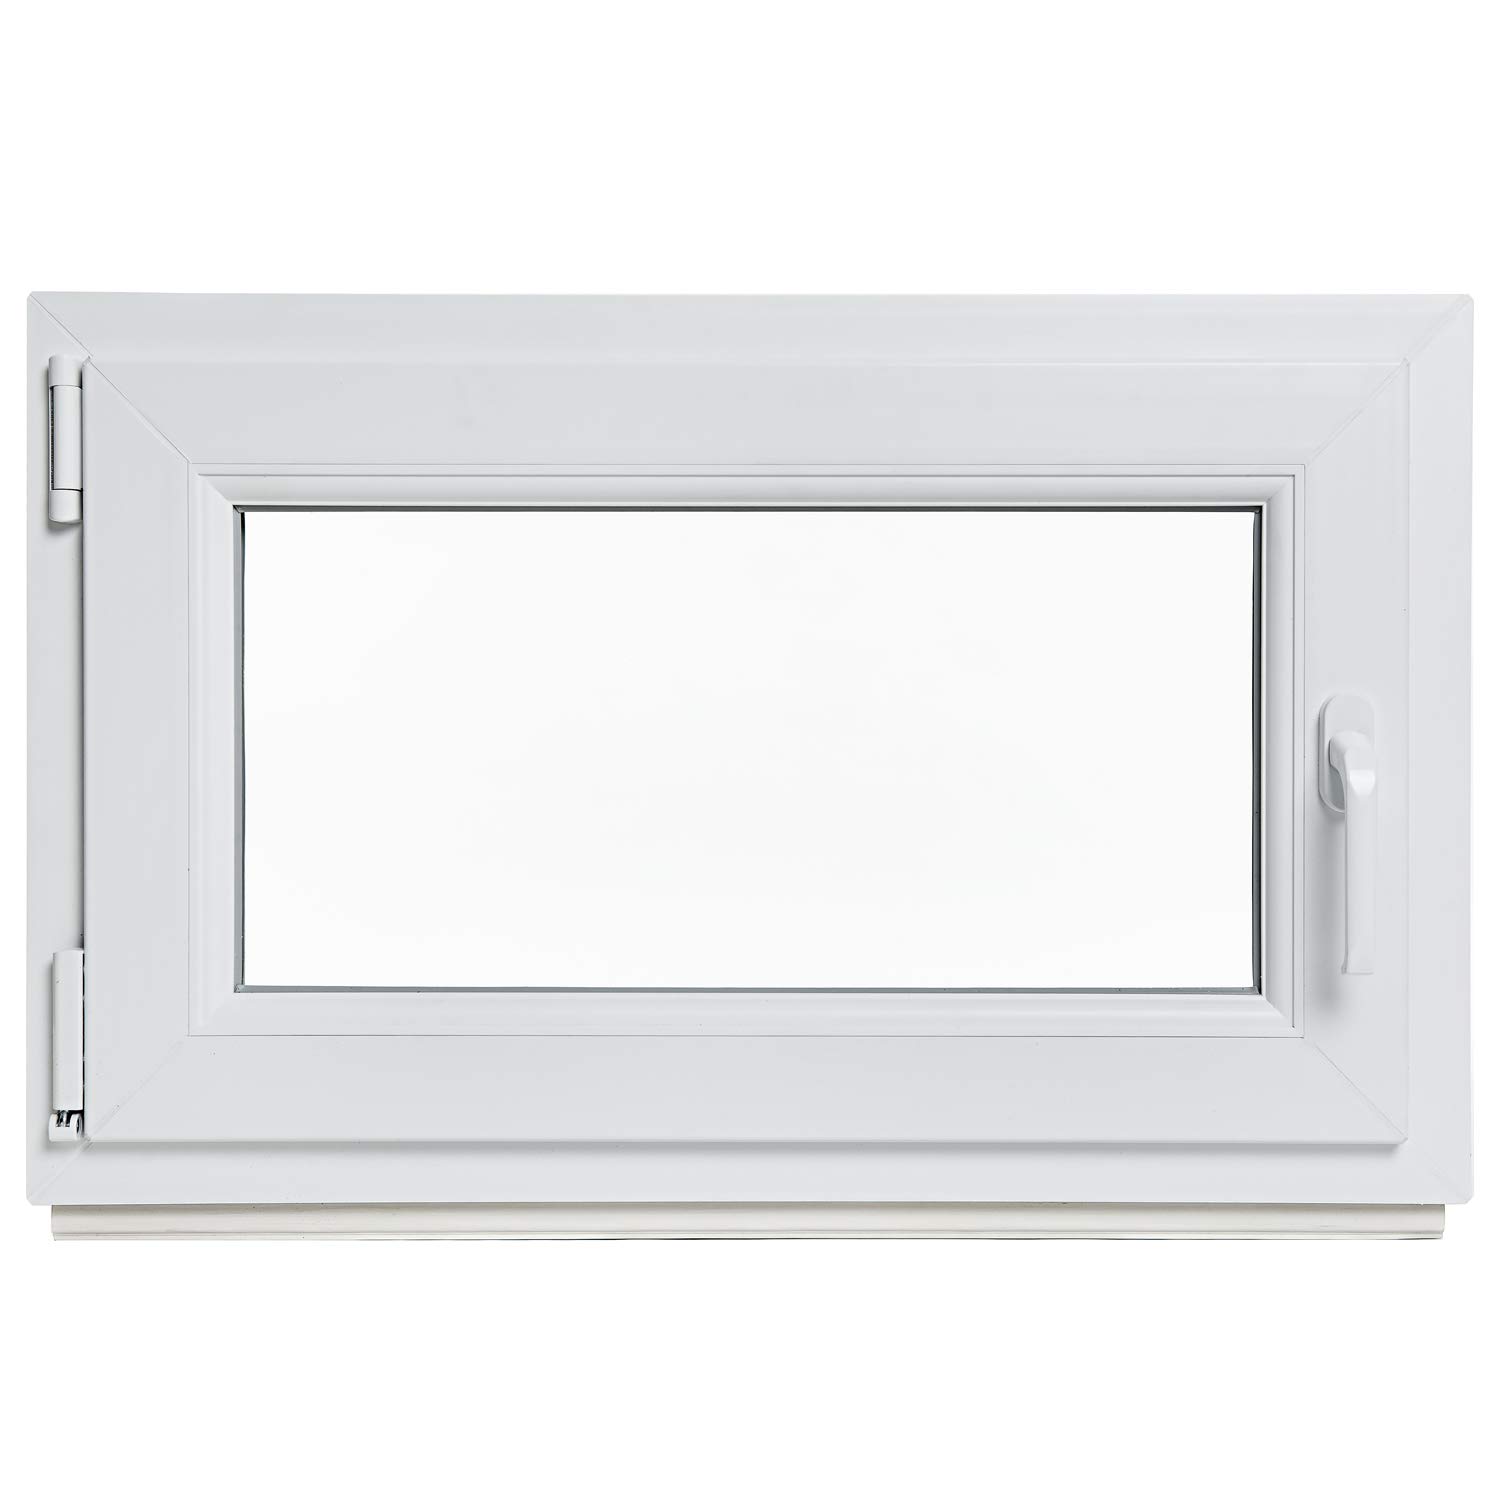 Kellerfenster - Kunststoff - Fenster - weiß - BxH: 70 x 70 cm - DIN links - 2-fach-Verglasung - Lagerware